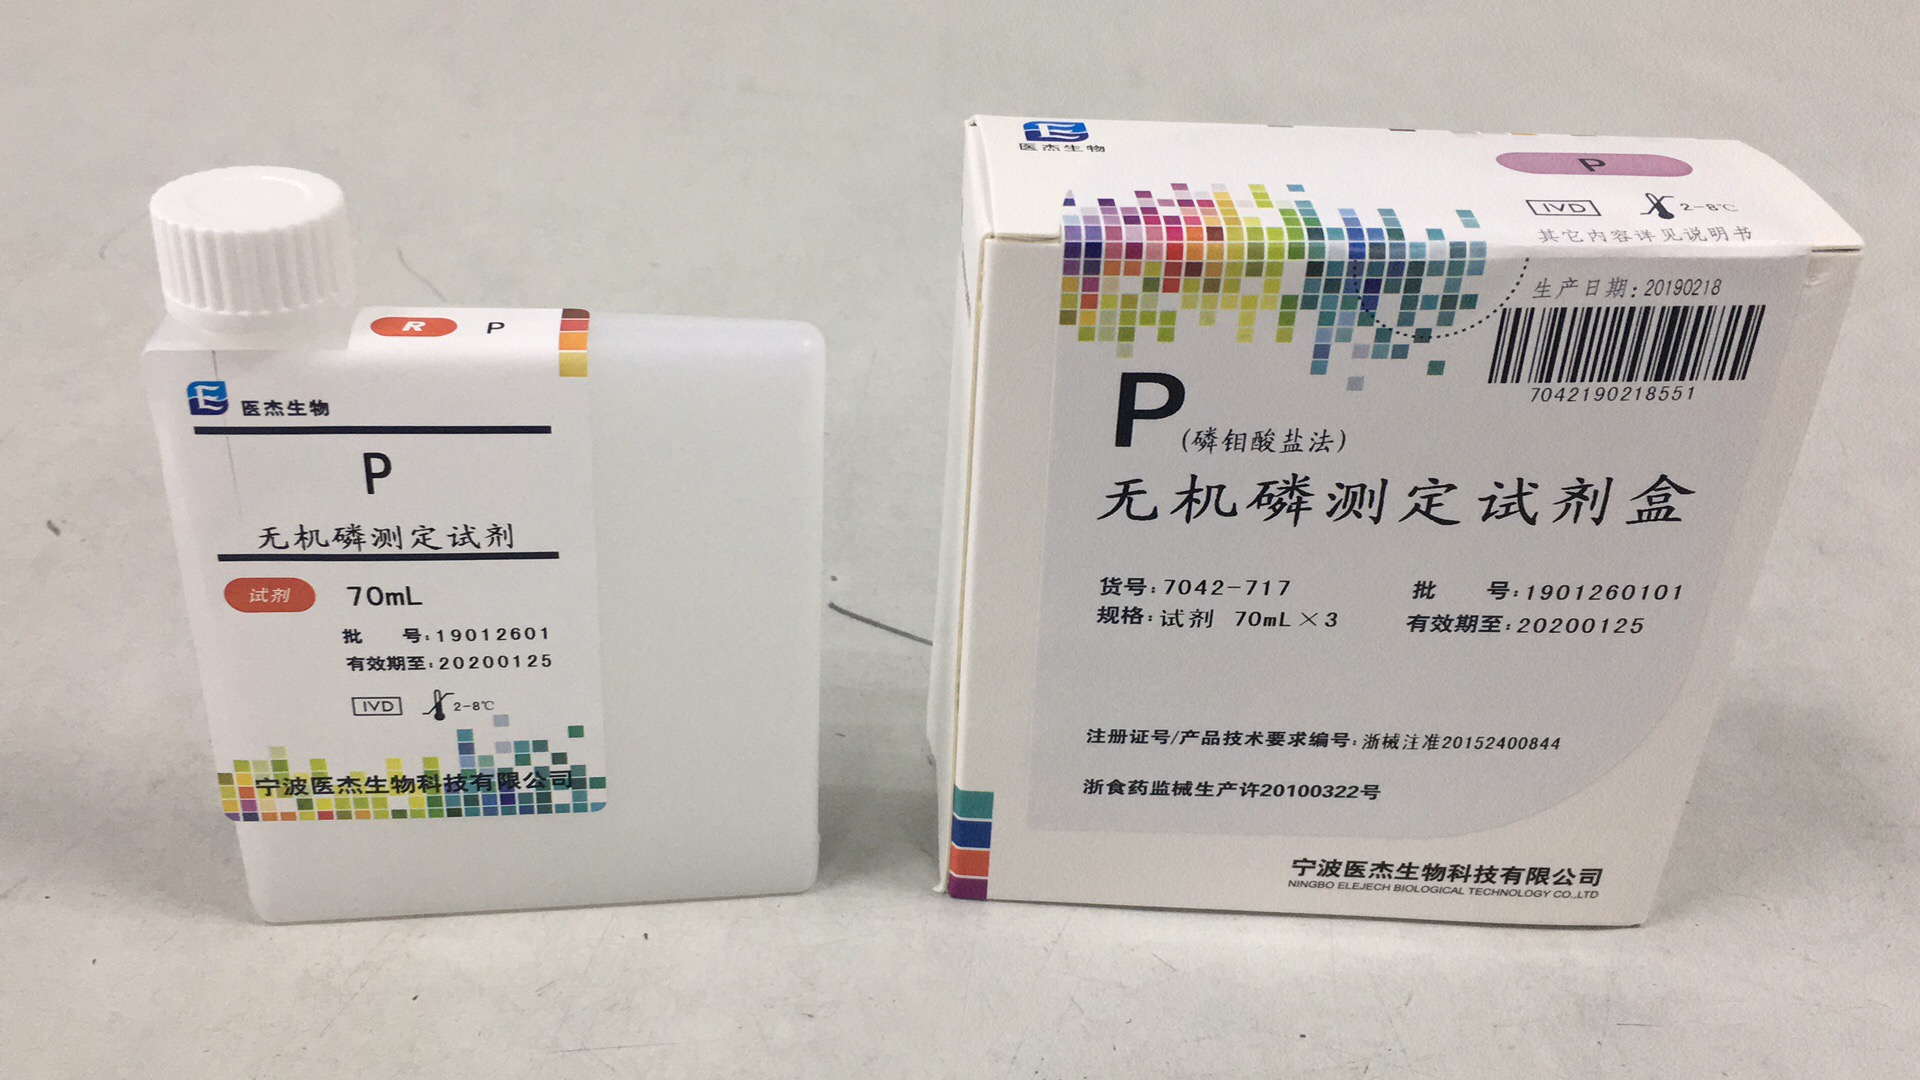 【医杰】无机磷测定试剂盒(磷钼酸盐法)